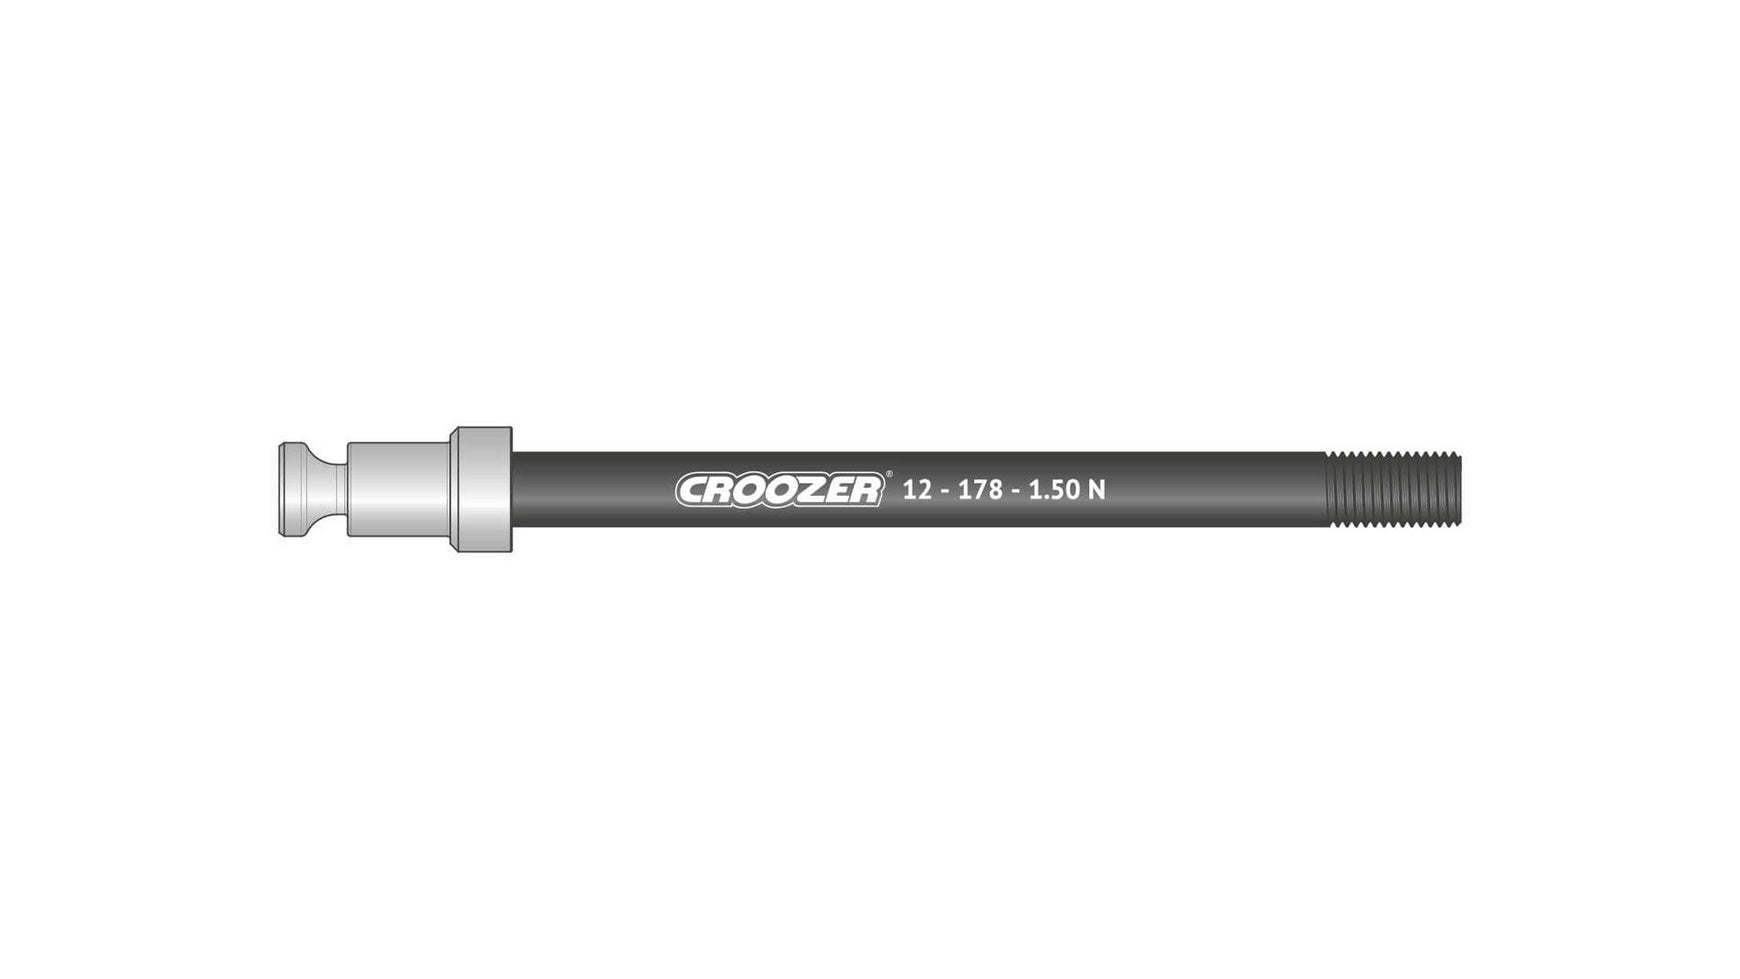 Croozer 12-178-1.50 N von CROOZER